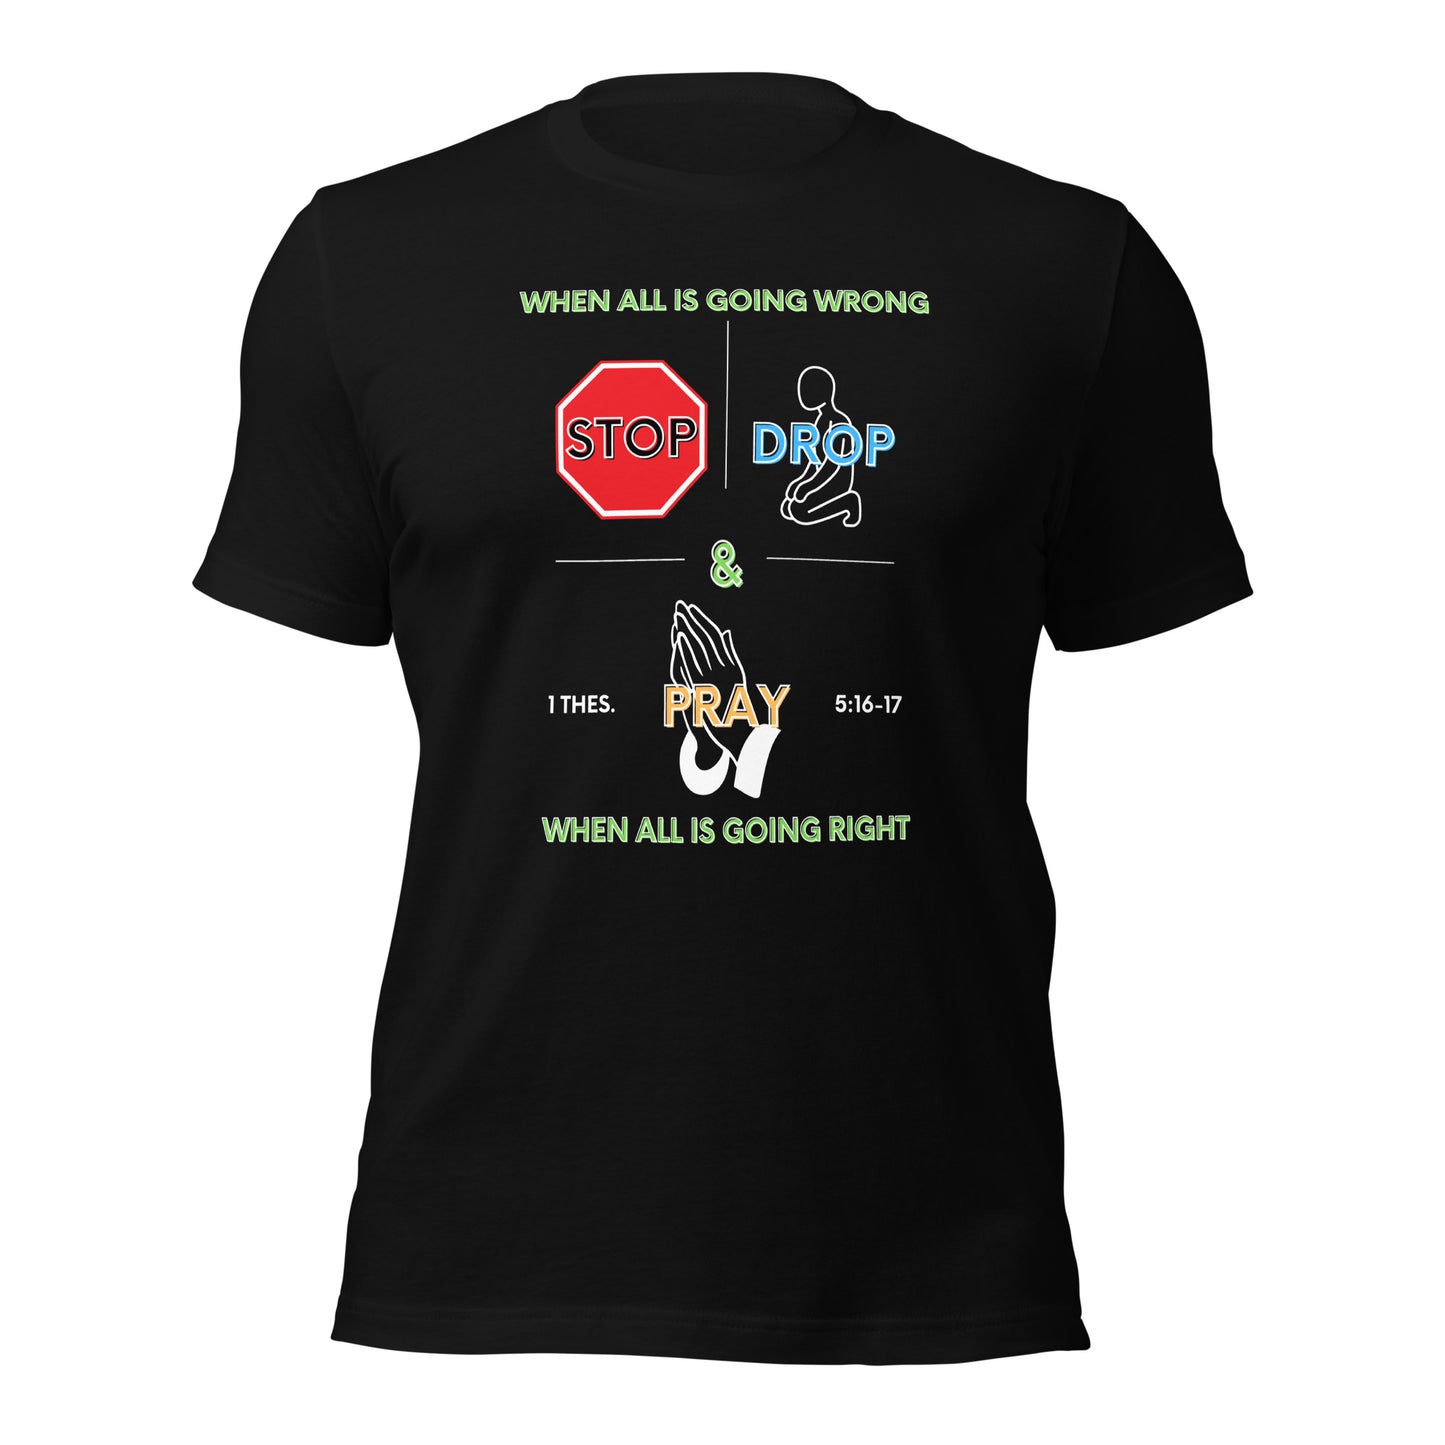 Stop, Drop, & Pray T-shirt